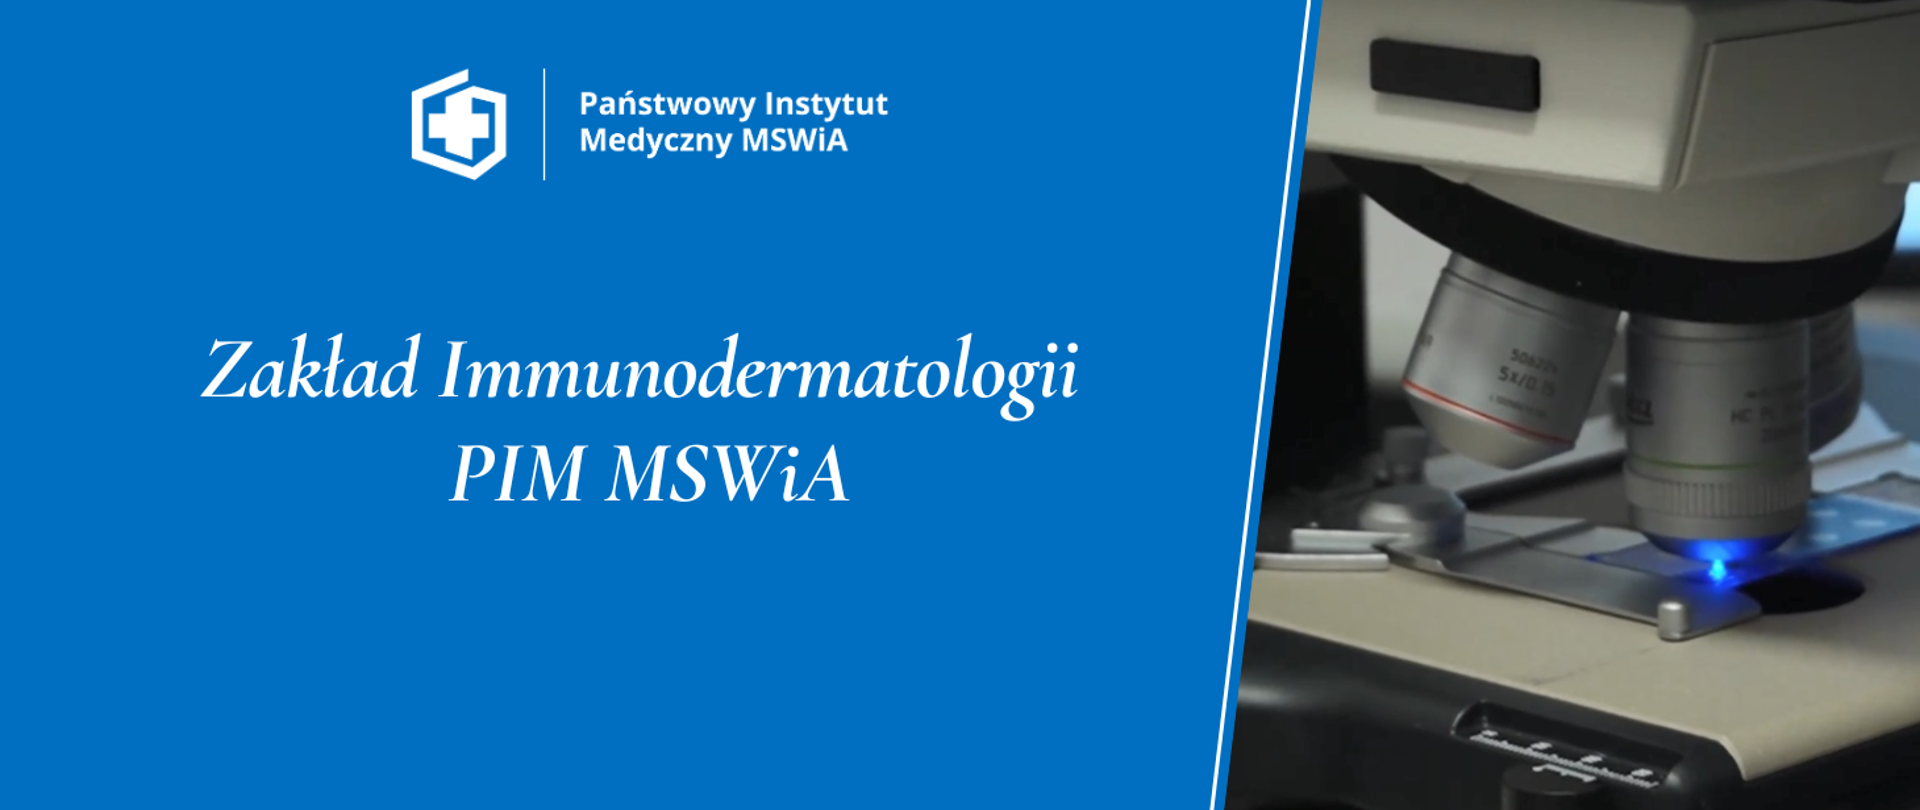 Zakład Immunodermatologii
PIM MSWiA